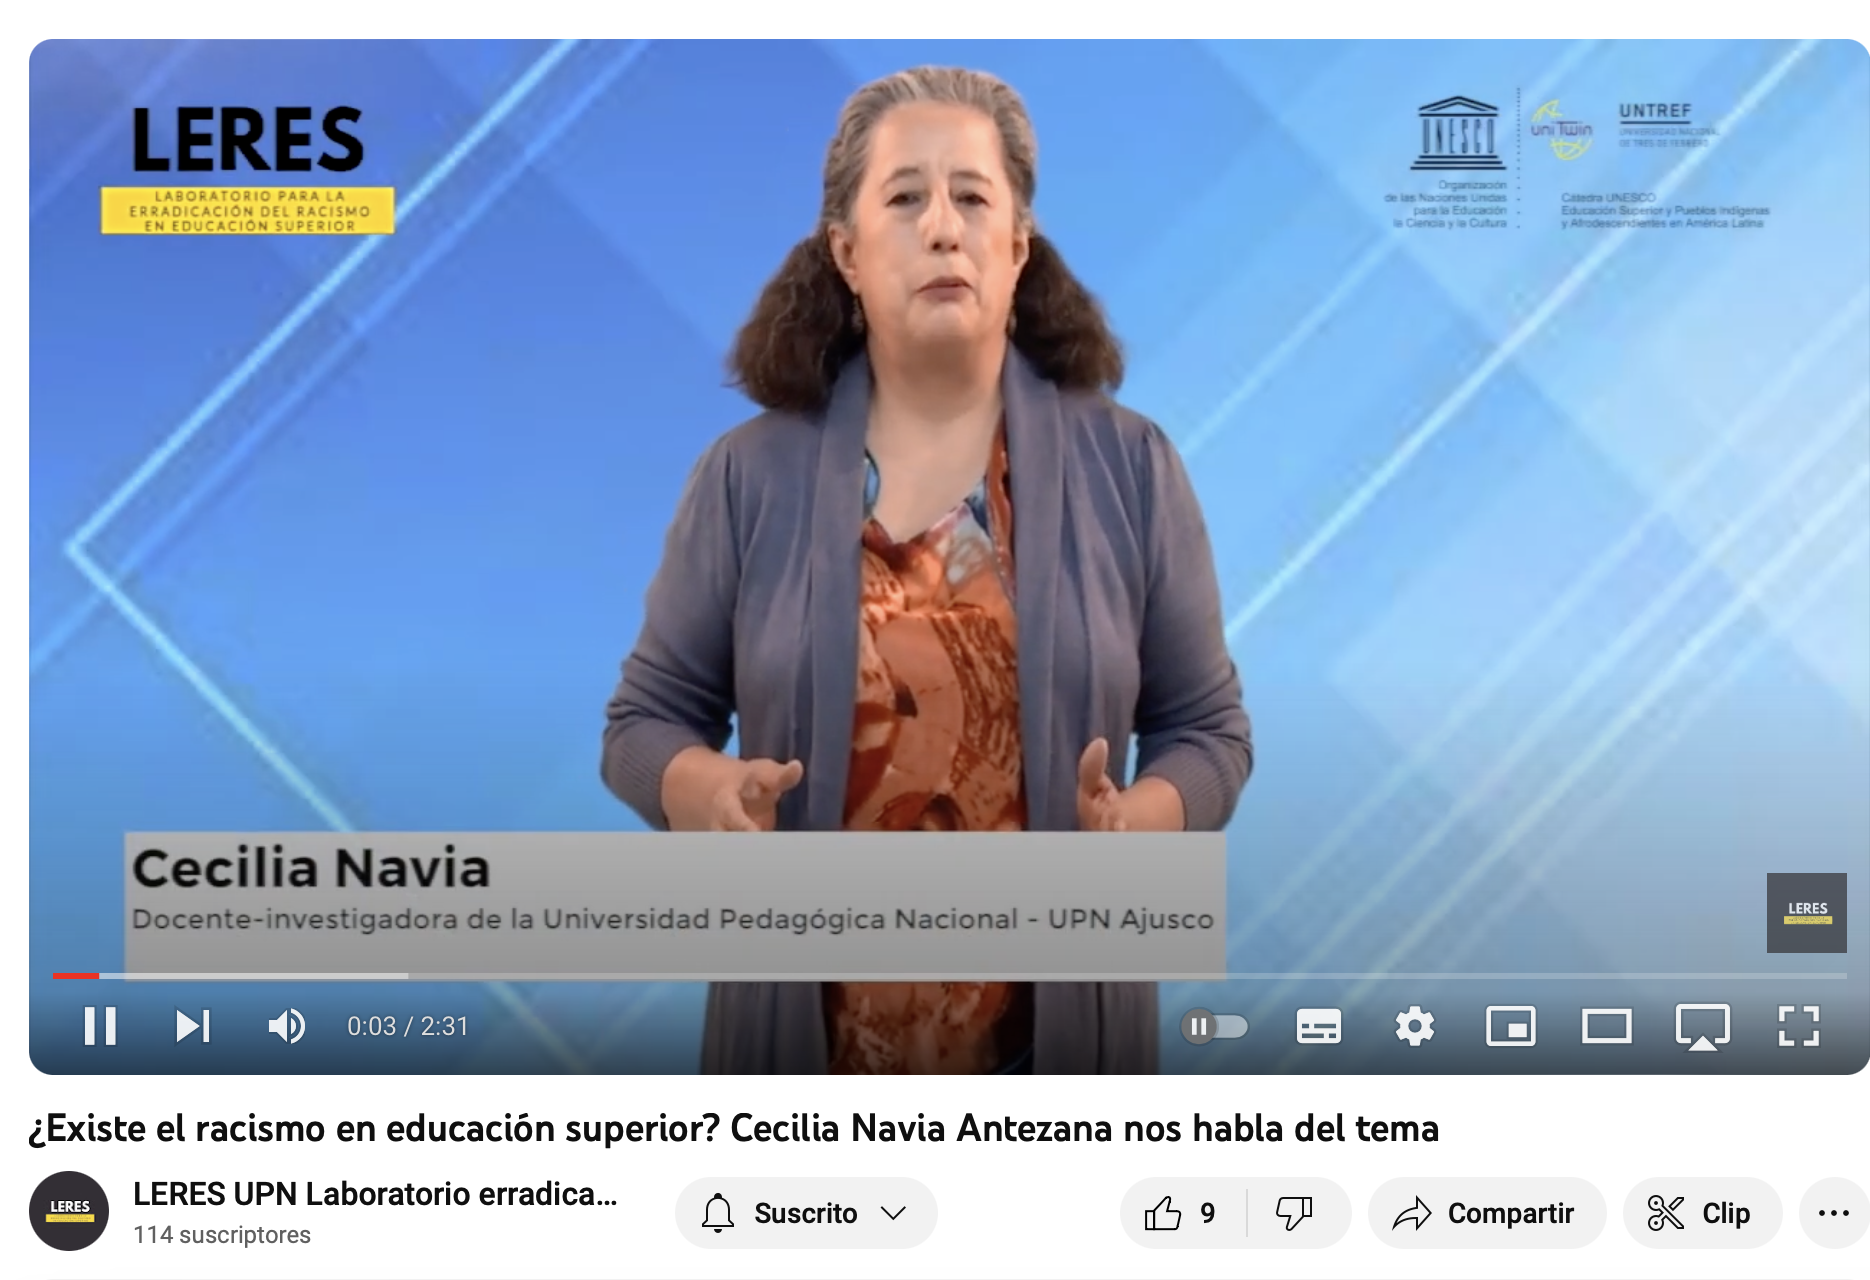 Cecilia Navia Antezana